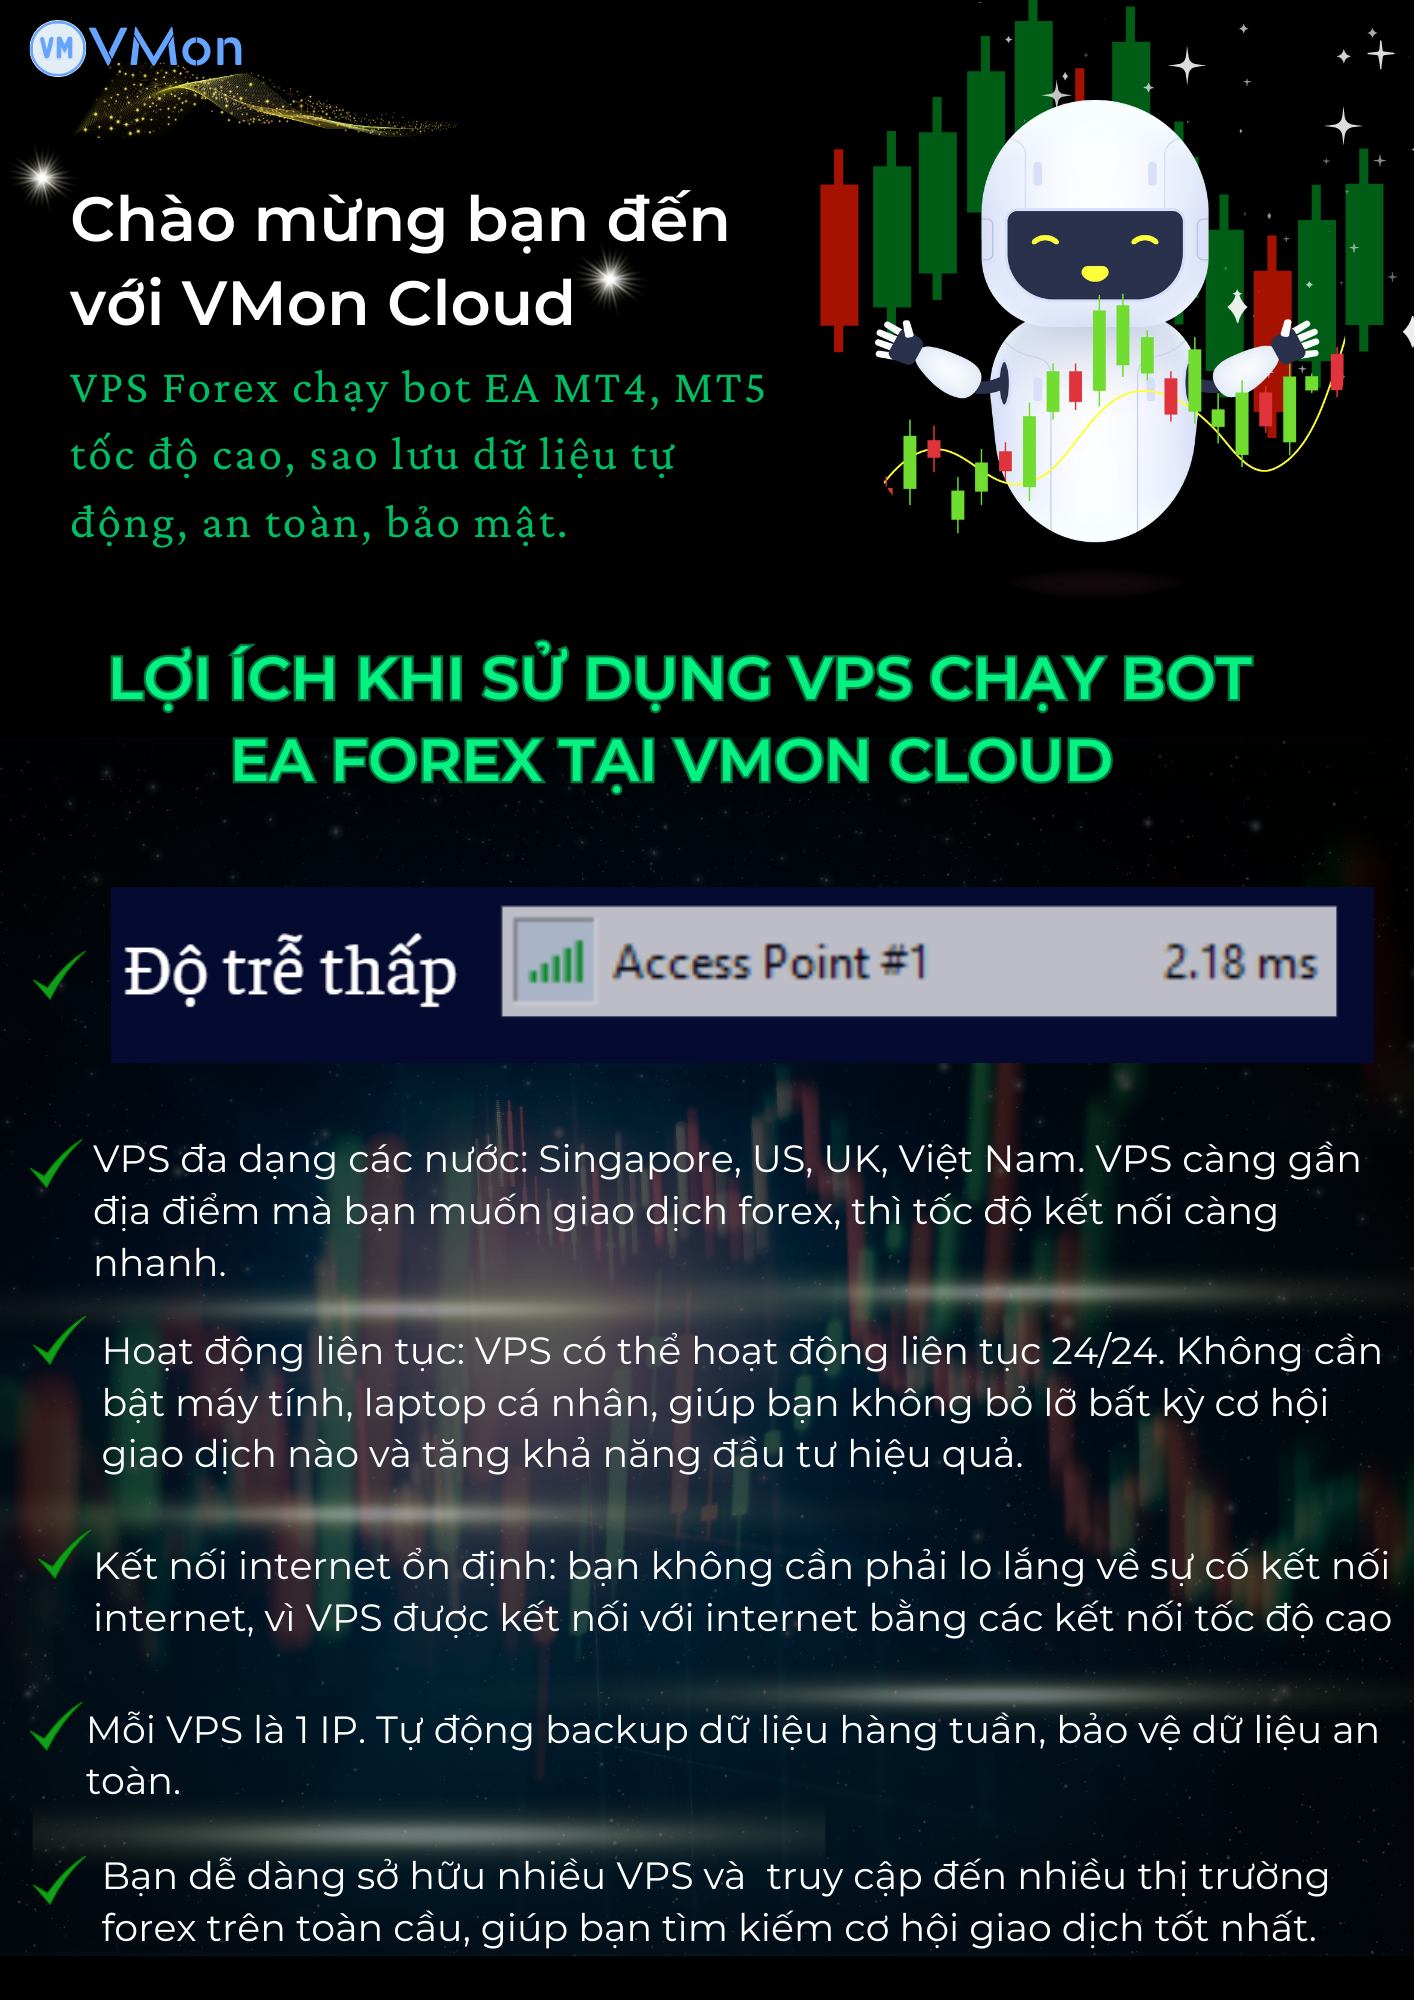 VPS Forex chạy bot EA MT4, MT5 24/24 miễn phí dùng thử